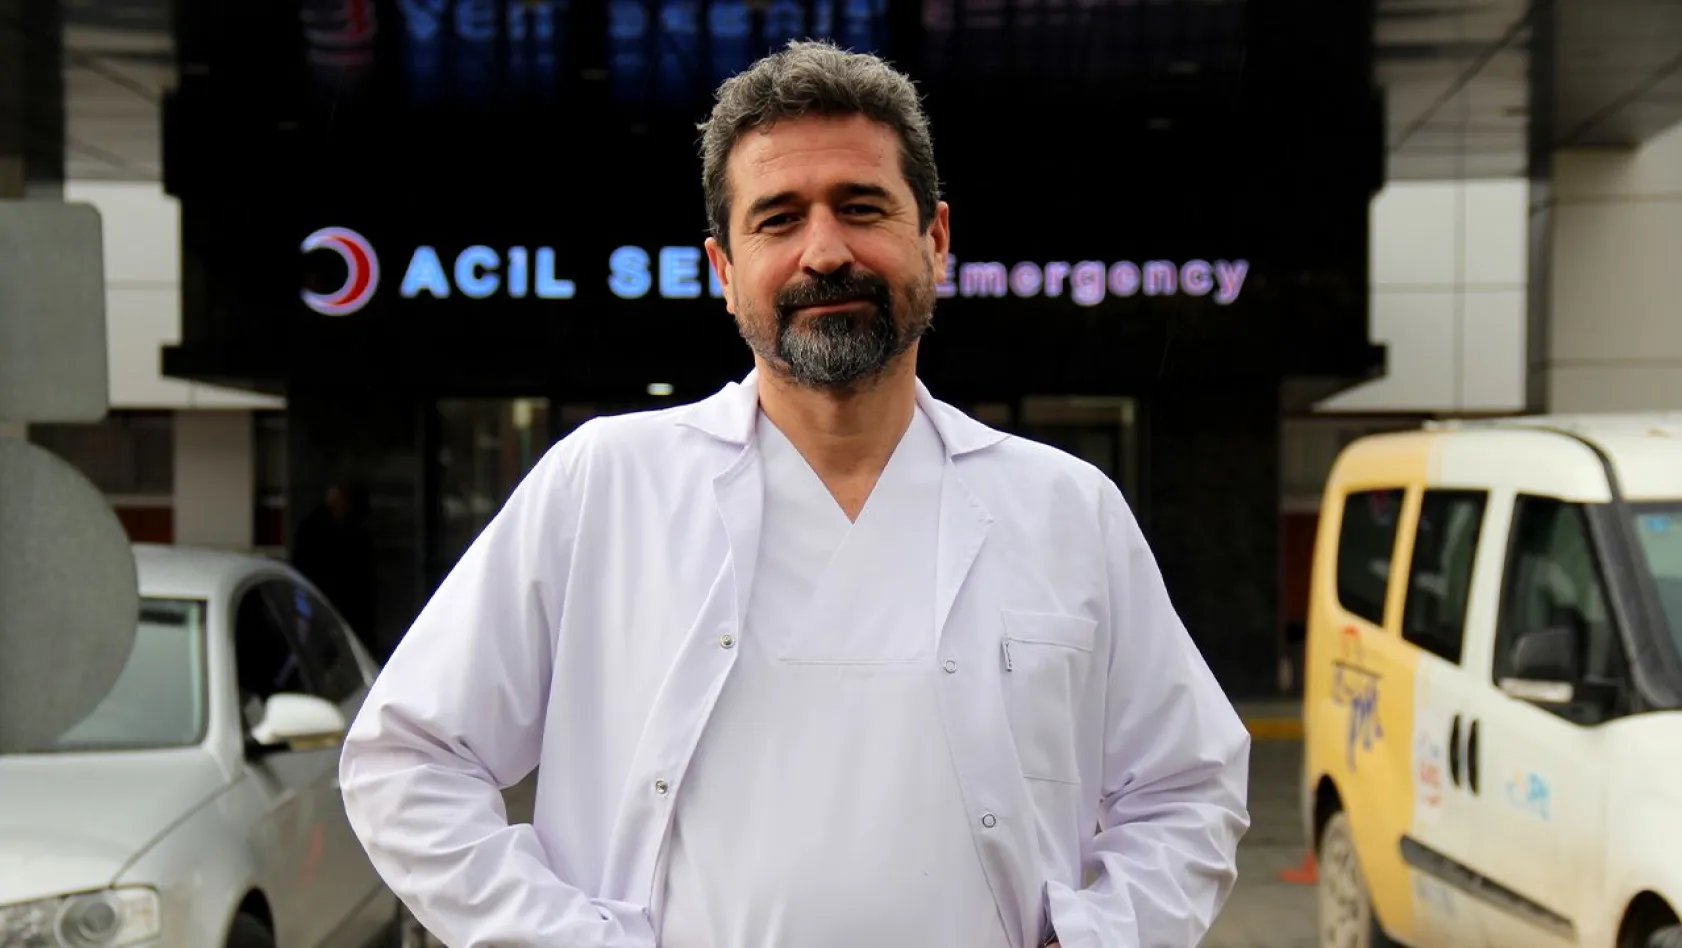 Doç. Dr. Mustafa Yılmaz: 'Acil servislere başvururken daha özverili olmalıyız'